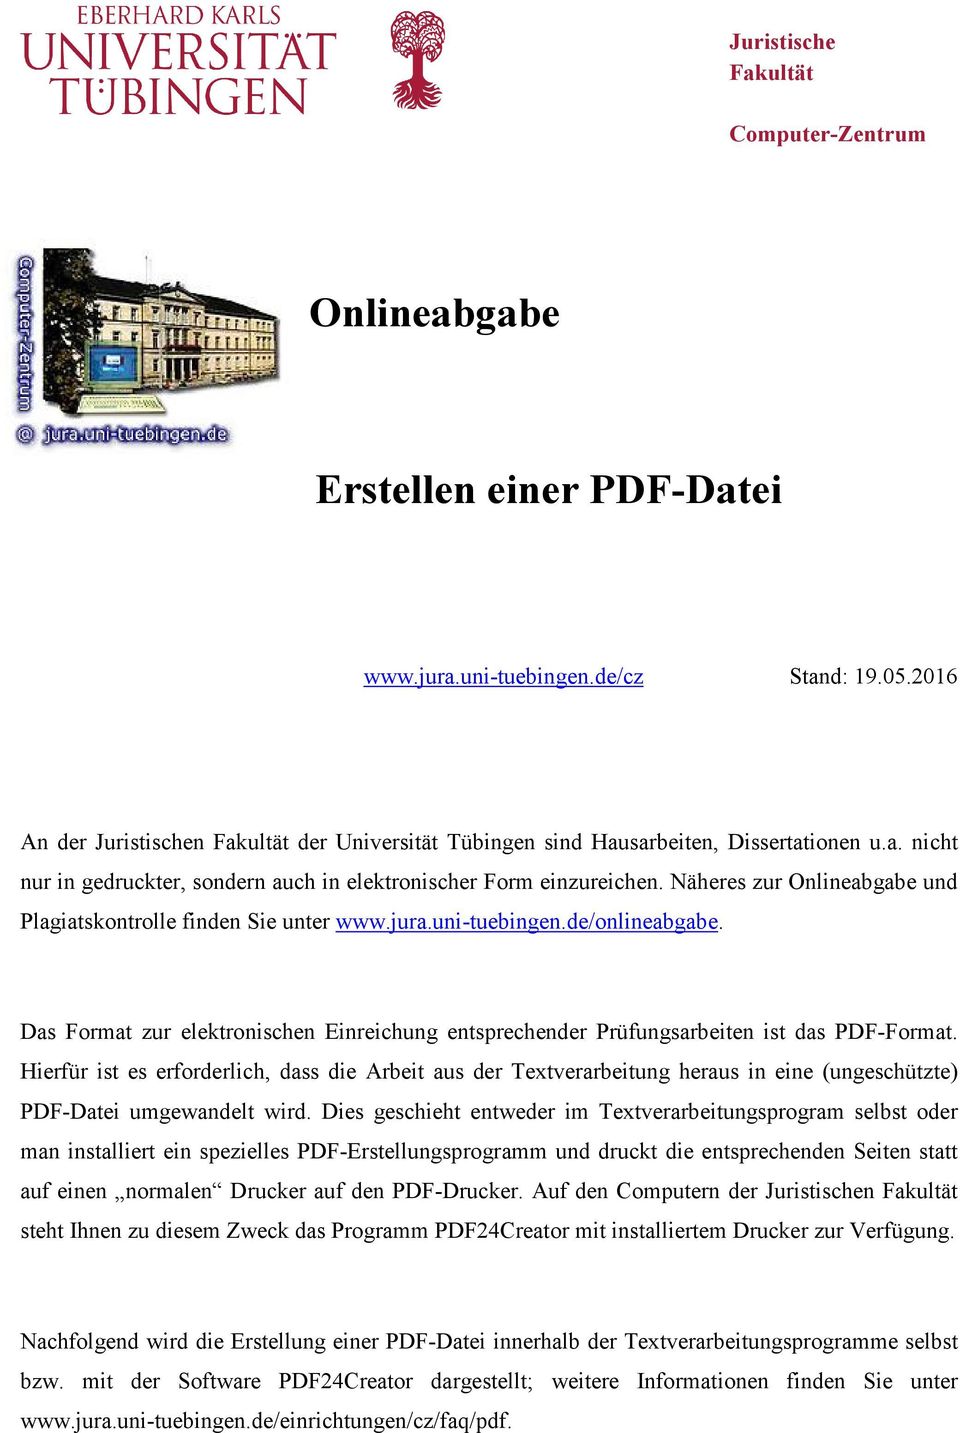 Näheres zur Onlineabgabe und Plagiatskontrolle finden Sie unter www.jura.uni-tuebingen.de/onlineabgabe. Das Format zur elektronischen Einreichung entsprechender Prüfungsarbeiten ist das PDF-Format.